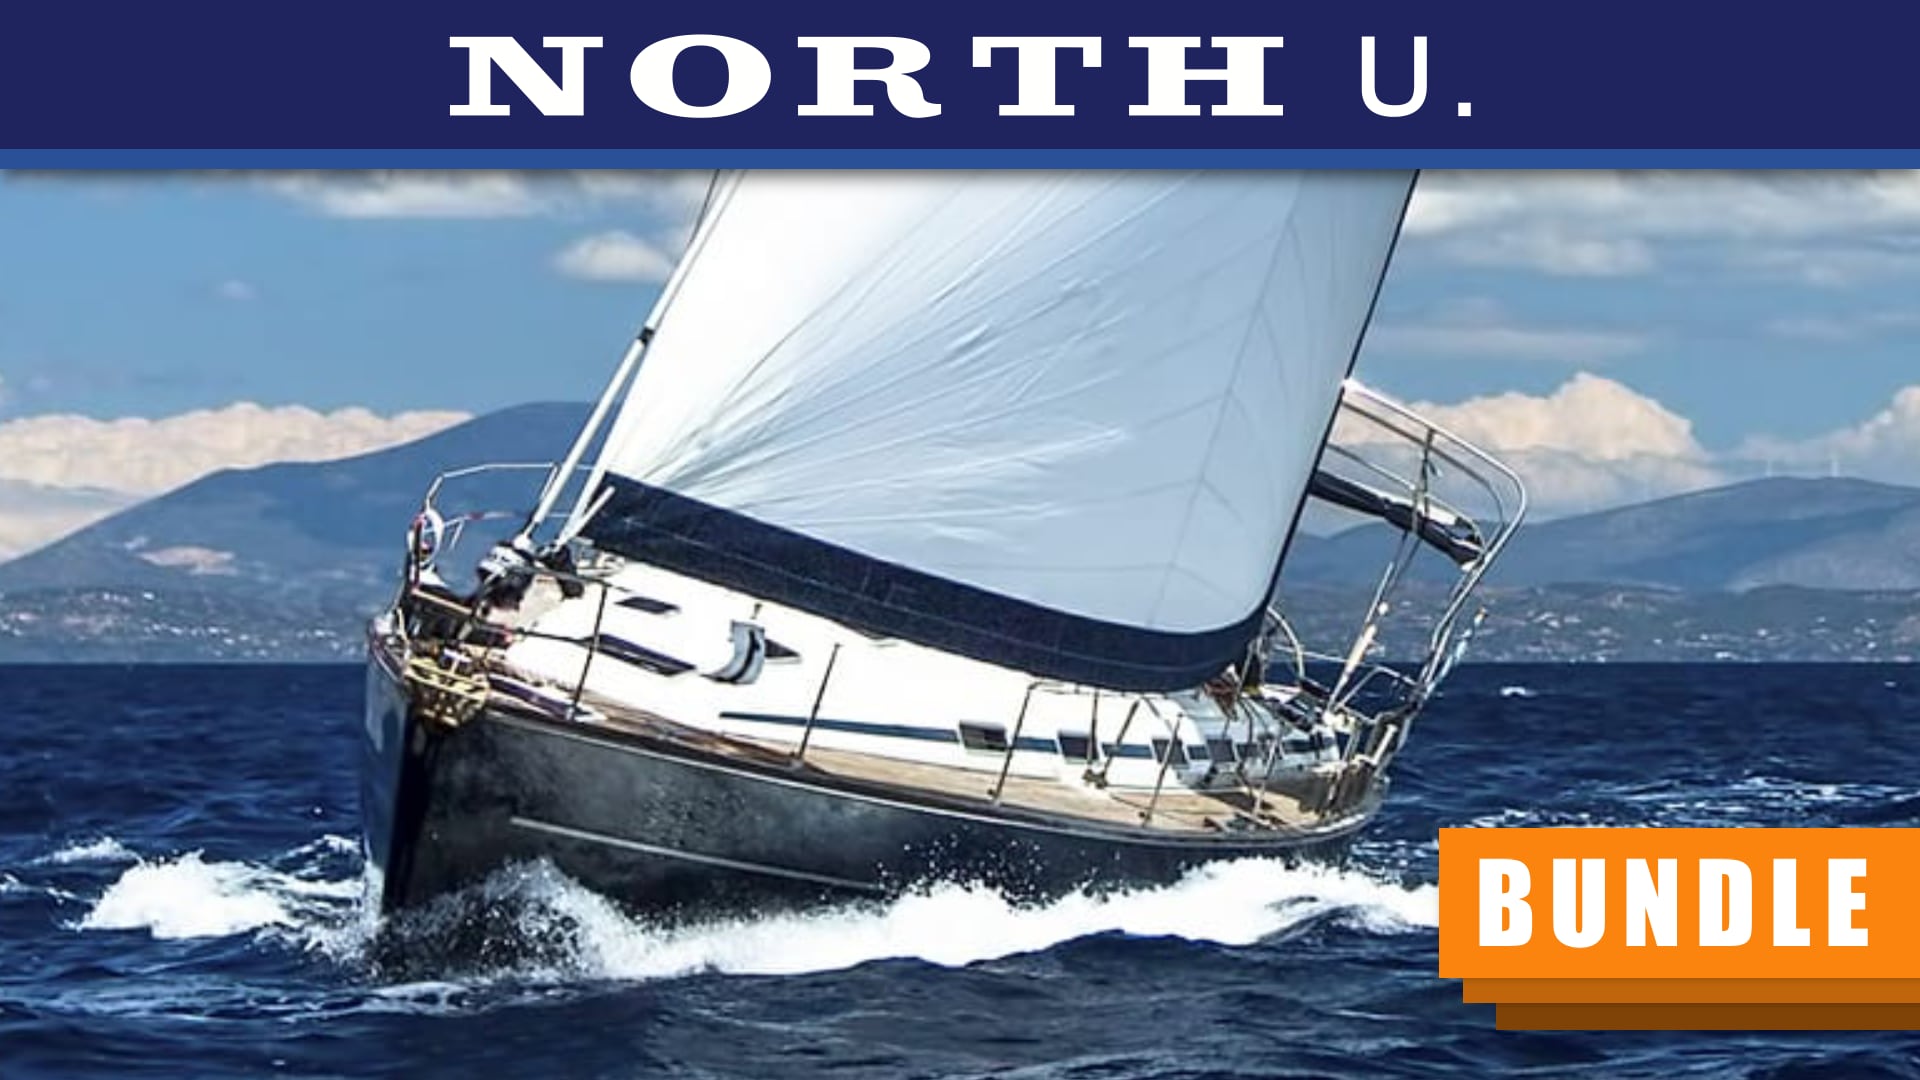 North U Sail Trim Bundle American Sailing